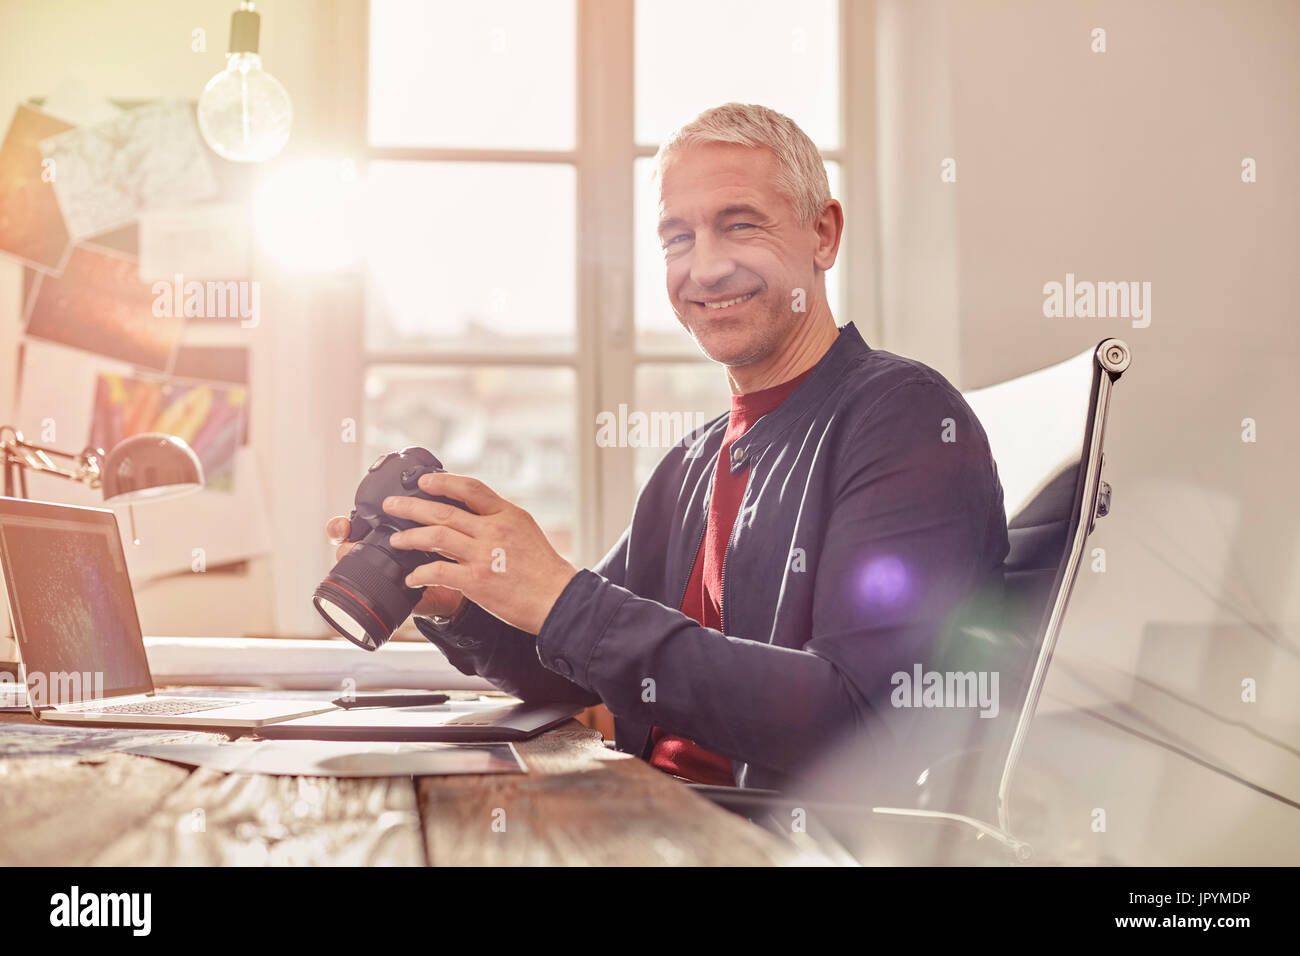 Portrait souriant, confiant homme photographe avec appareil photo numérique working at laptop in office ensoleillée Banque D'Images